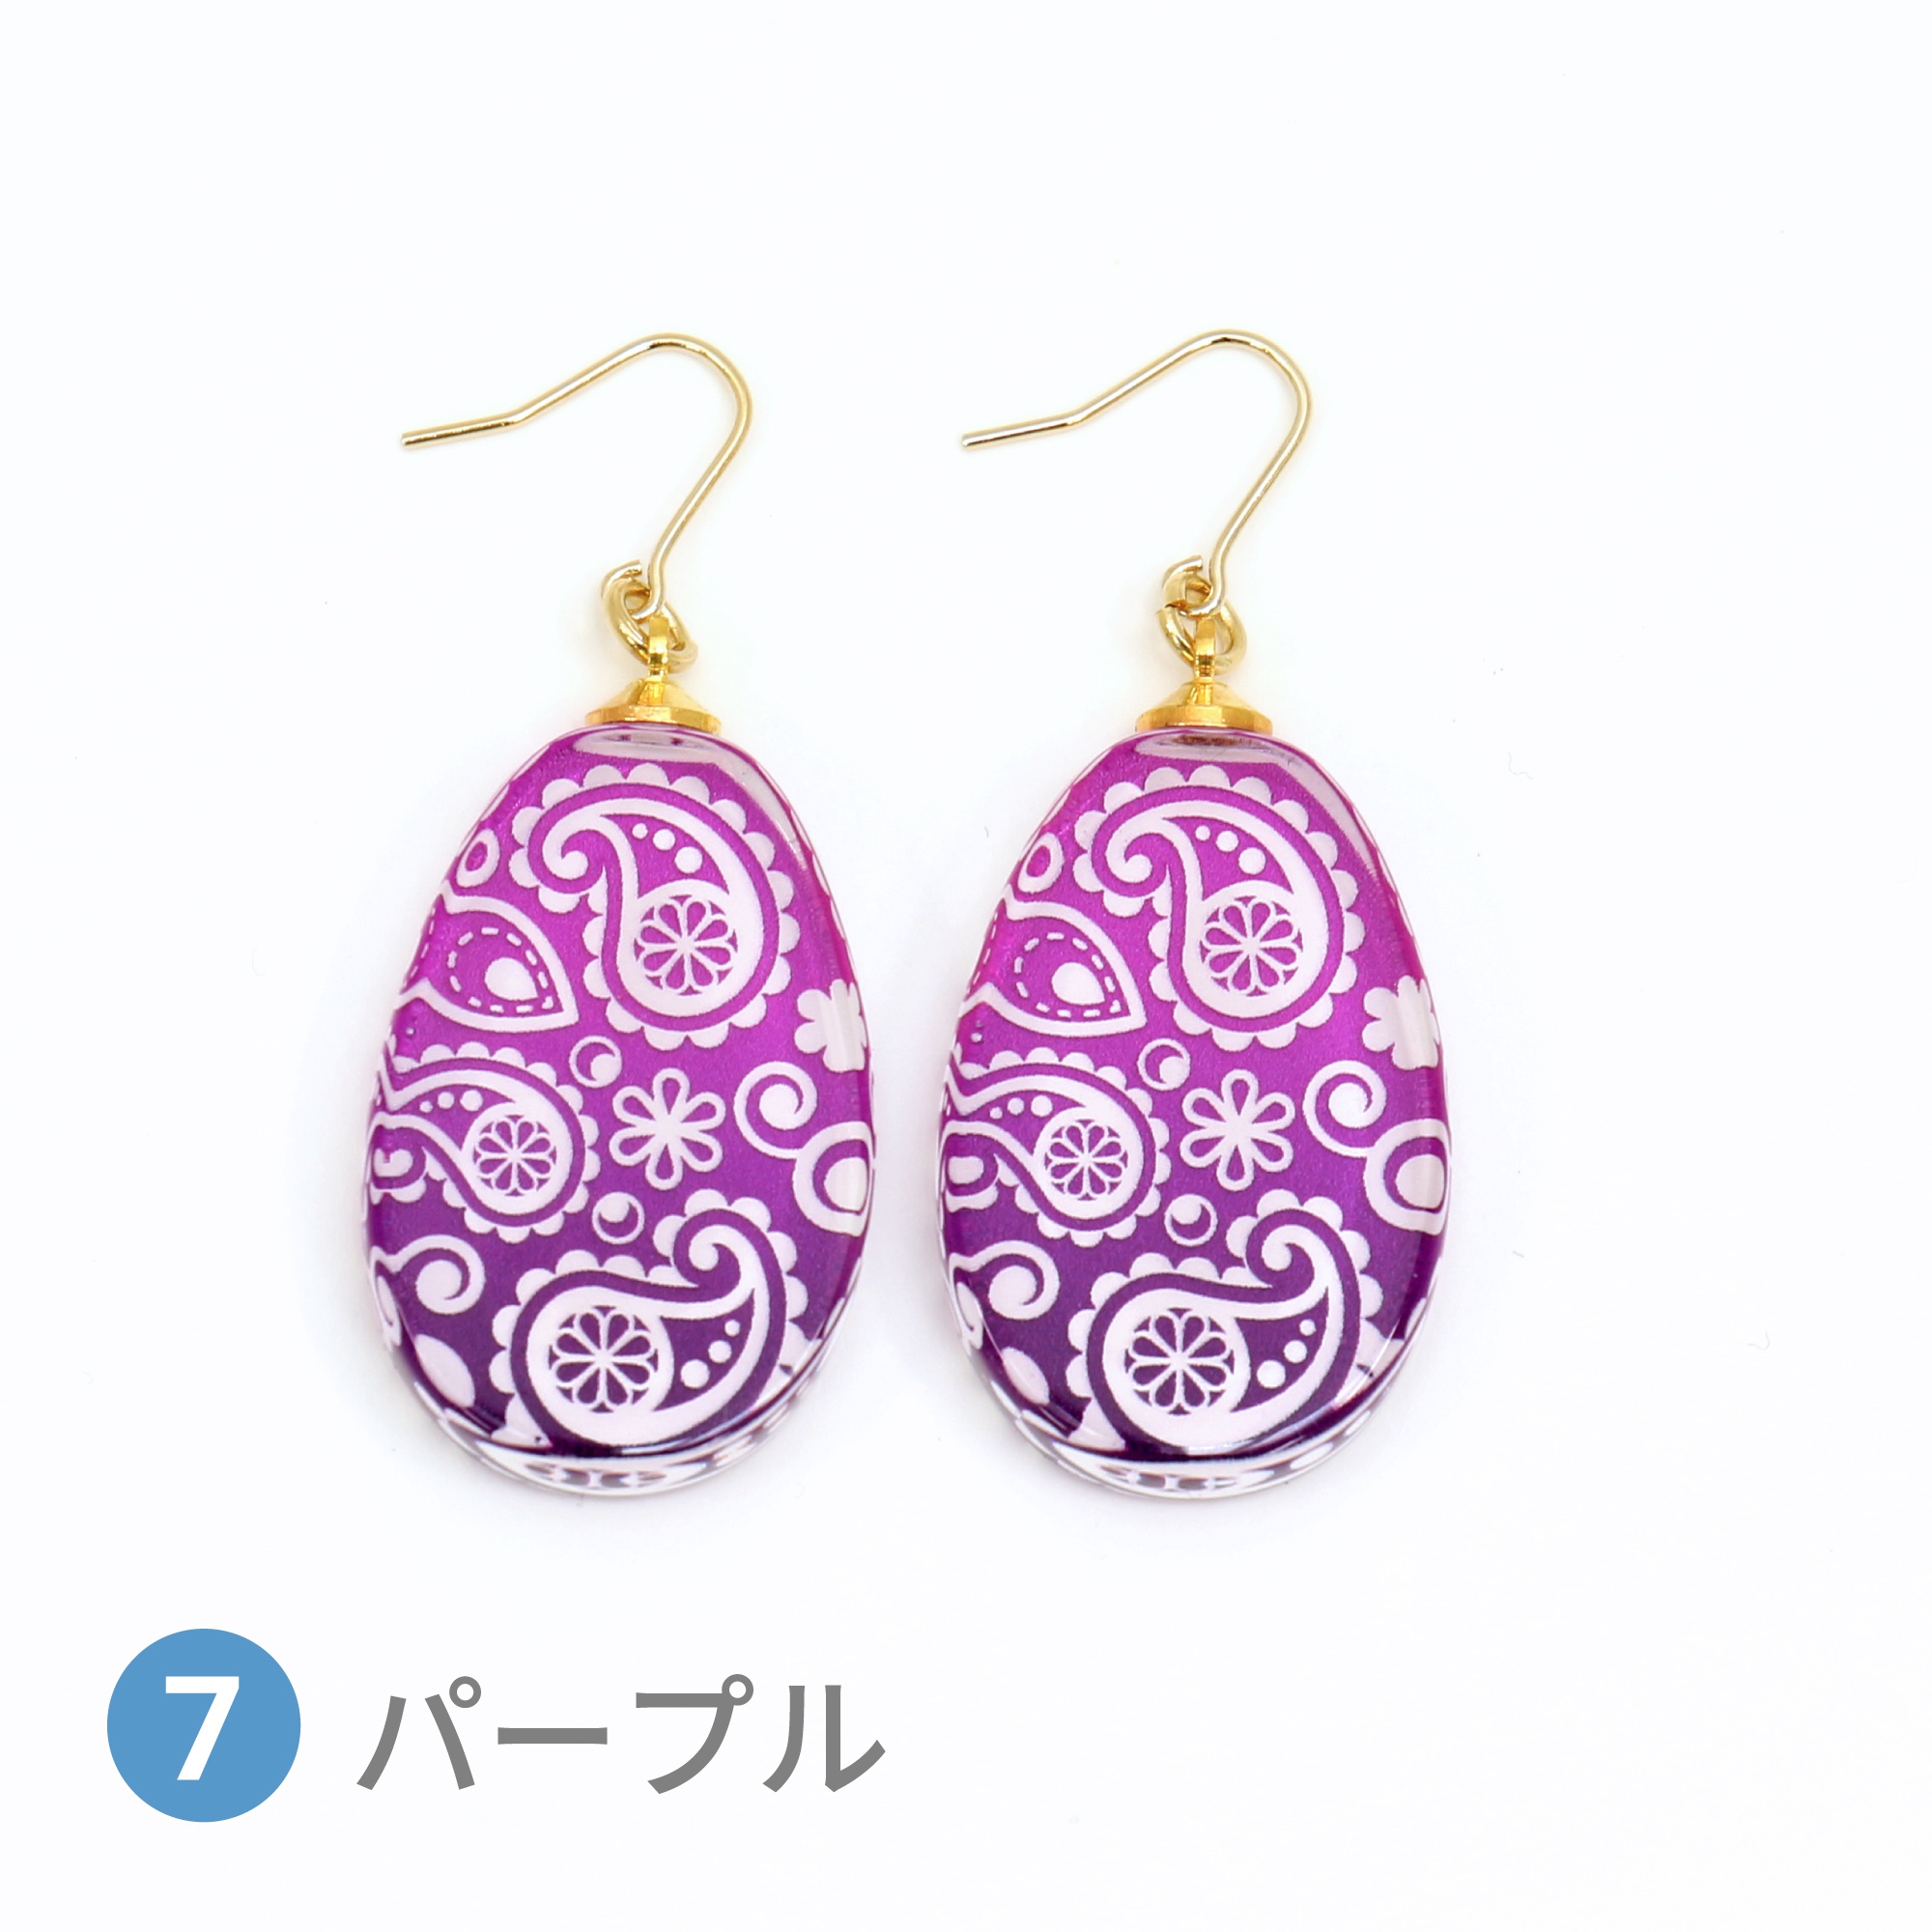 Glass accessories Pierced Earring PAISLEY purple drop shape